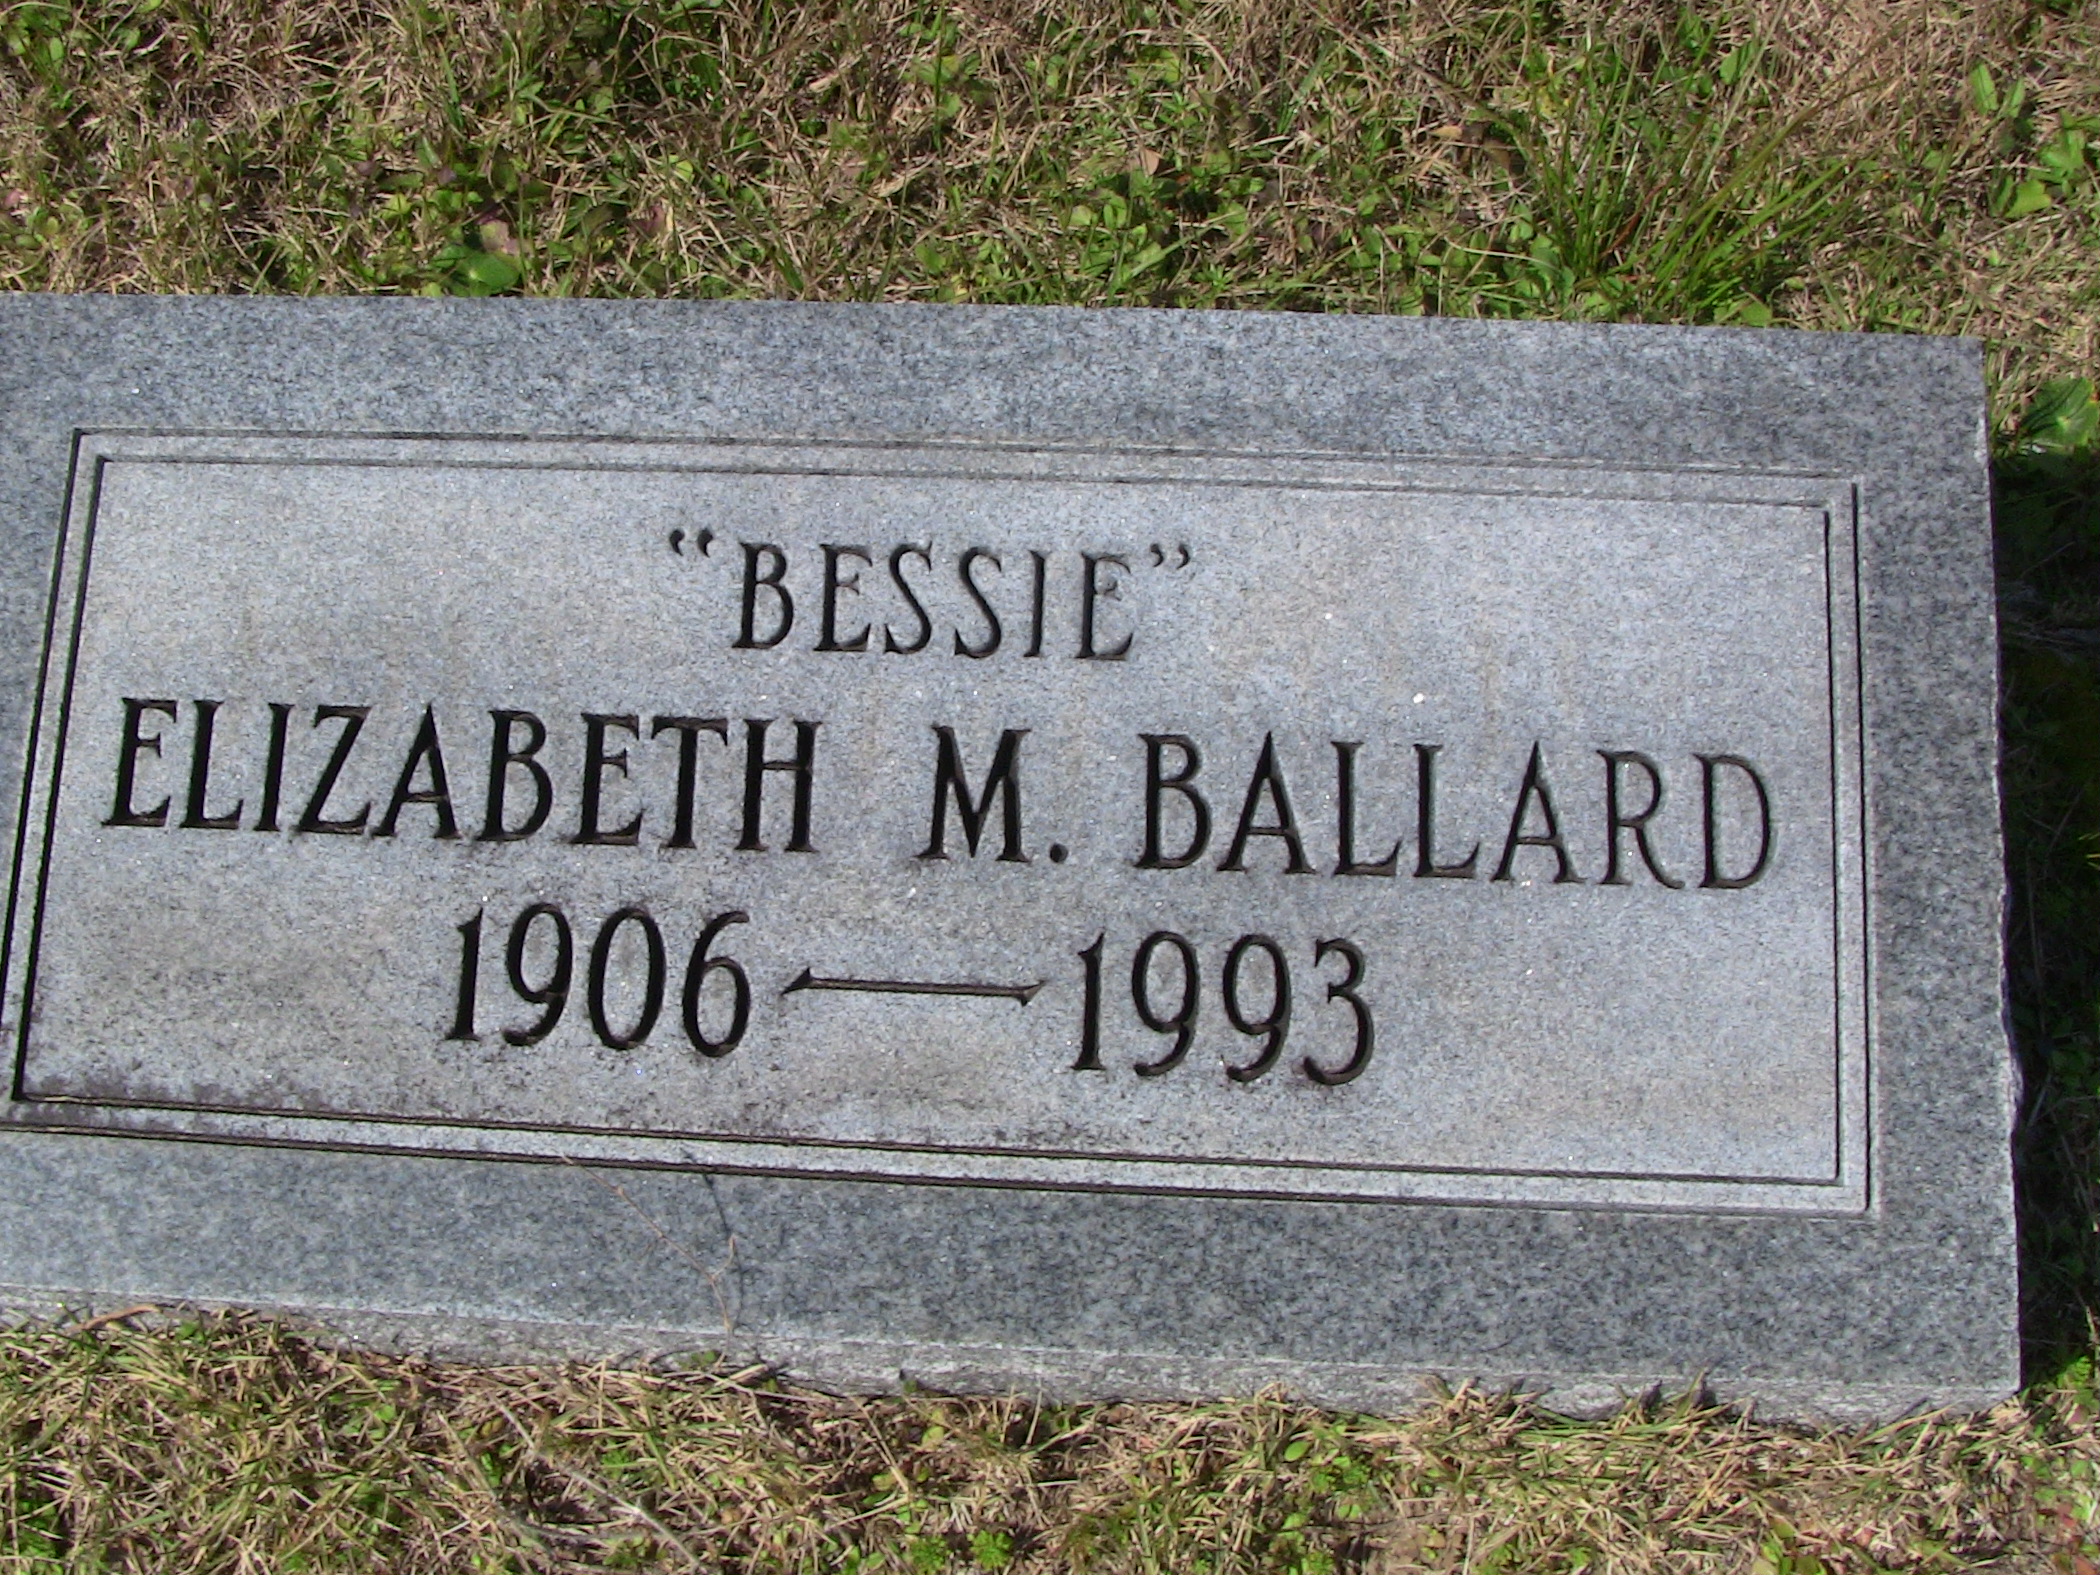 Bessie Elizabeth M. Ballard